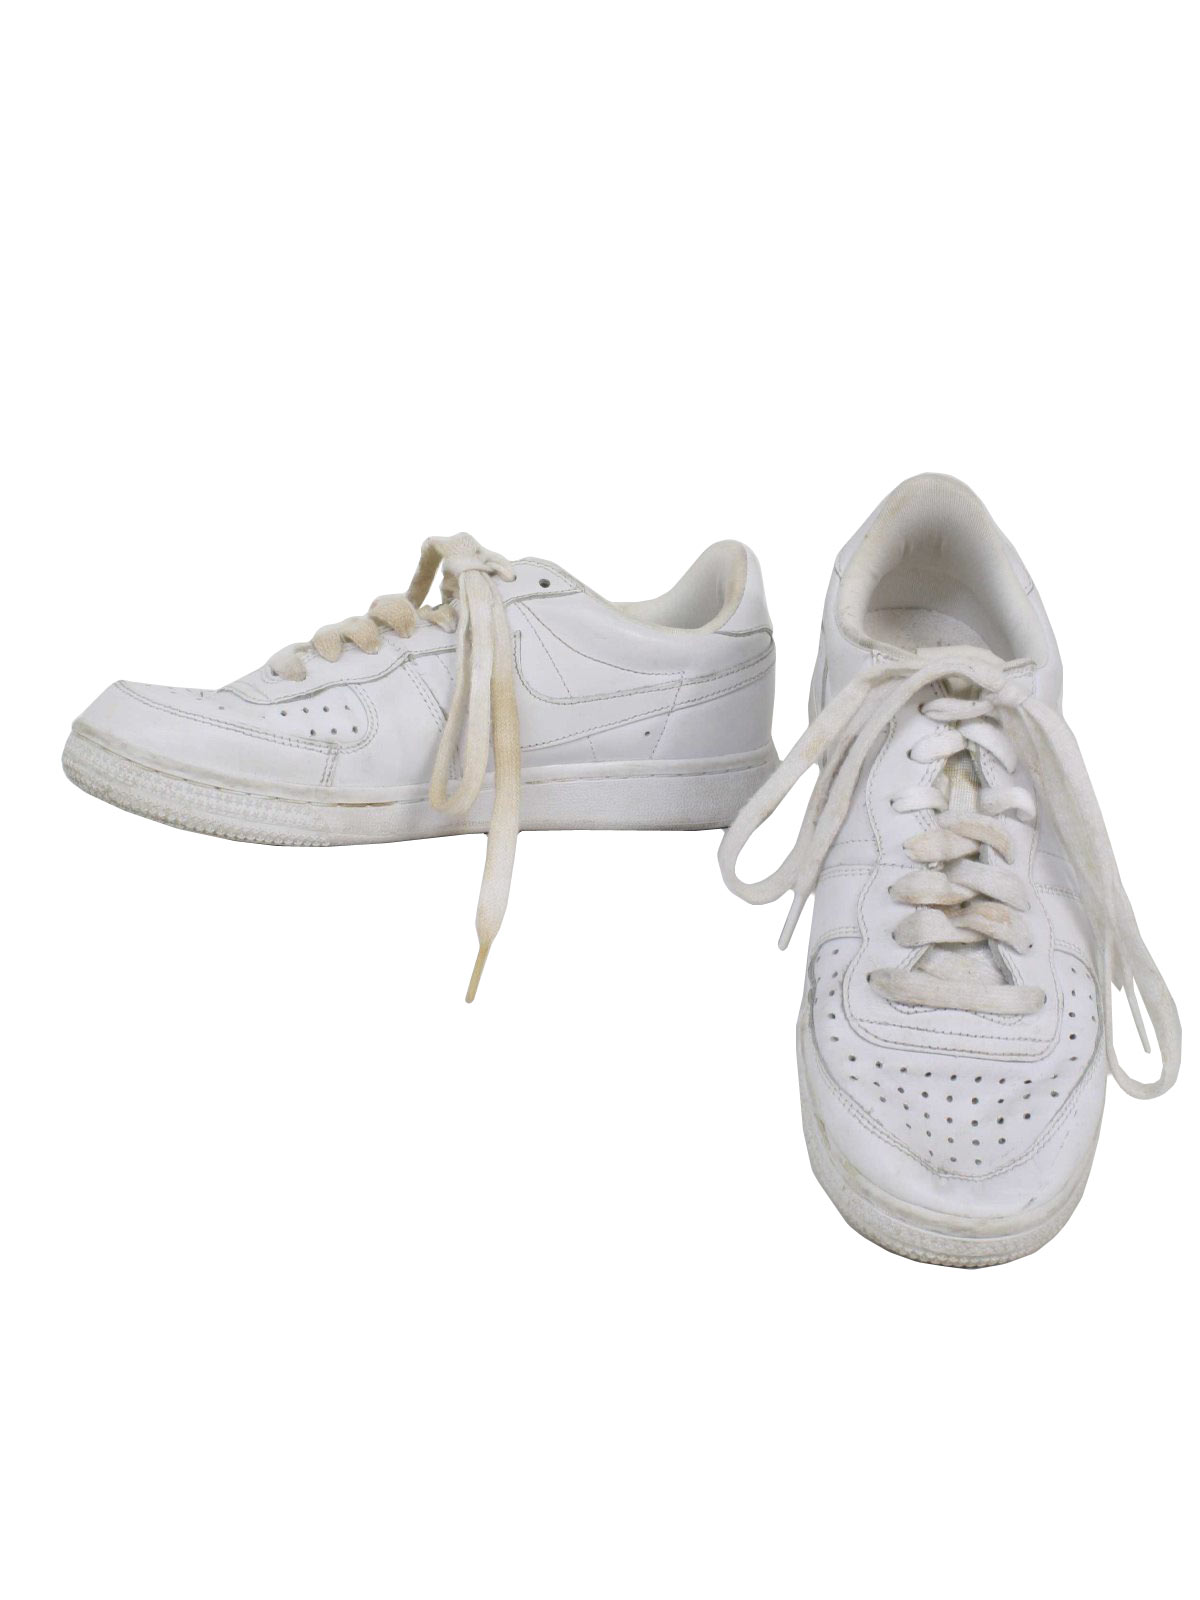 white retro nike shoes